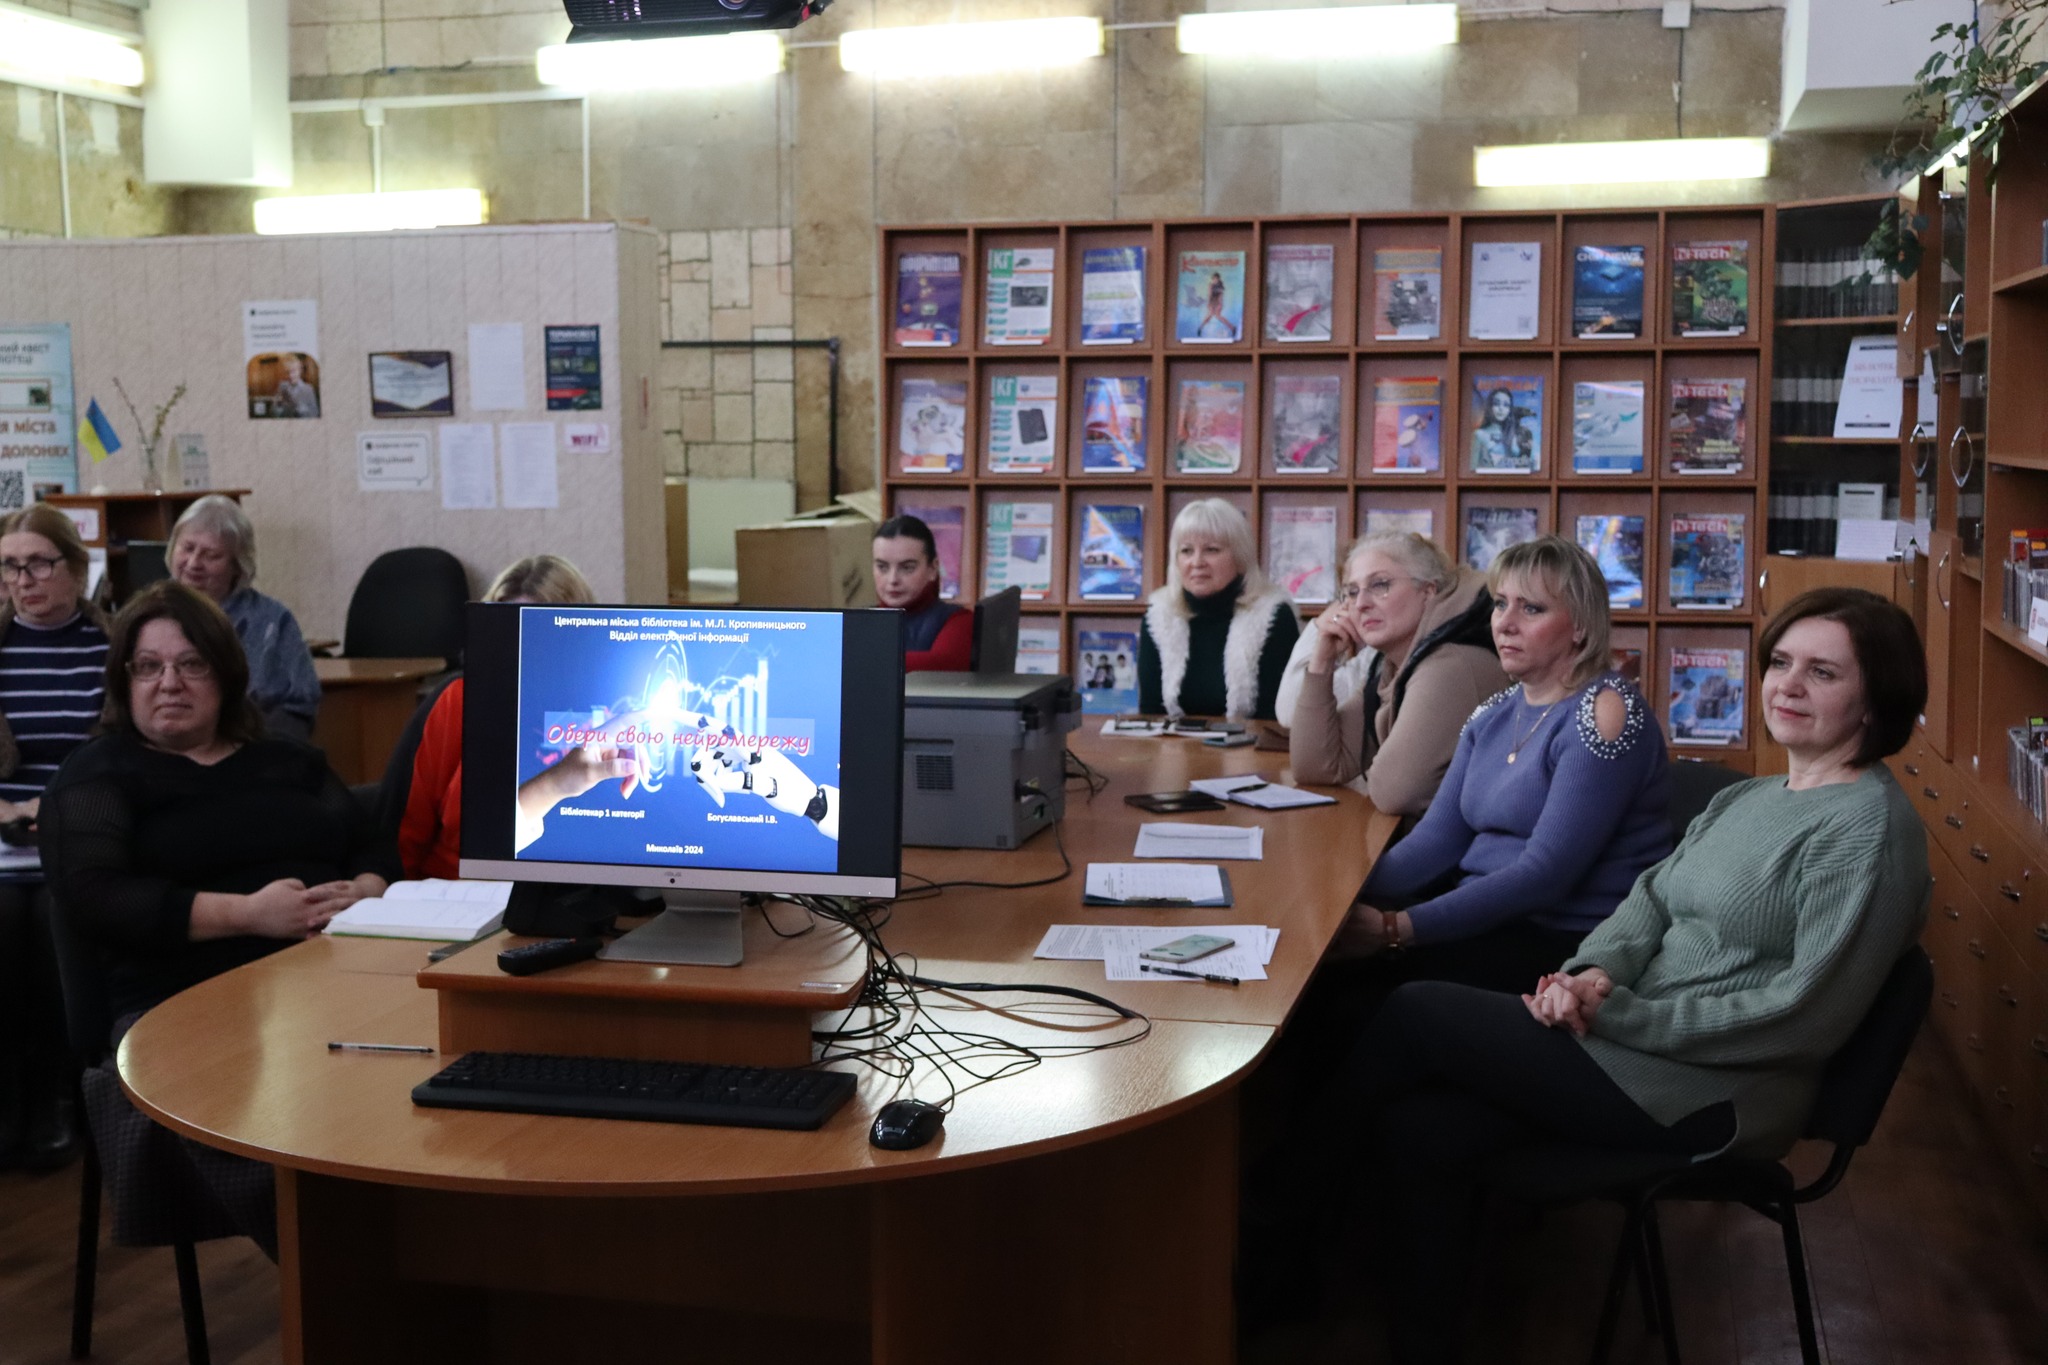 Бібліотекарі  відділу електронної інформації ЦМБ ім. М.Л. Кропивницького запросили своїх колег з бібліотек-філій на майстер-клас по штучному інтелекту